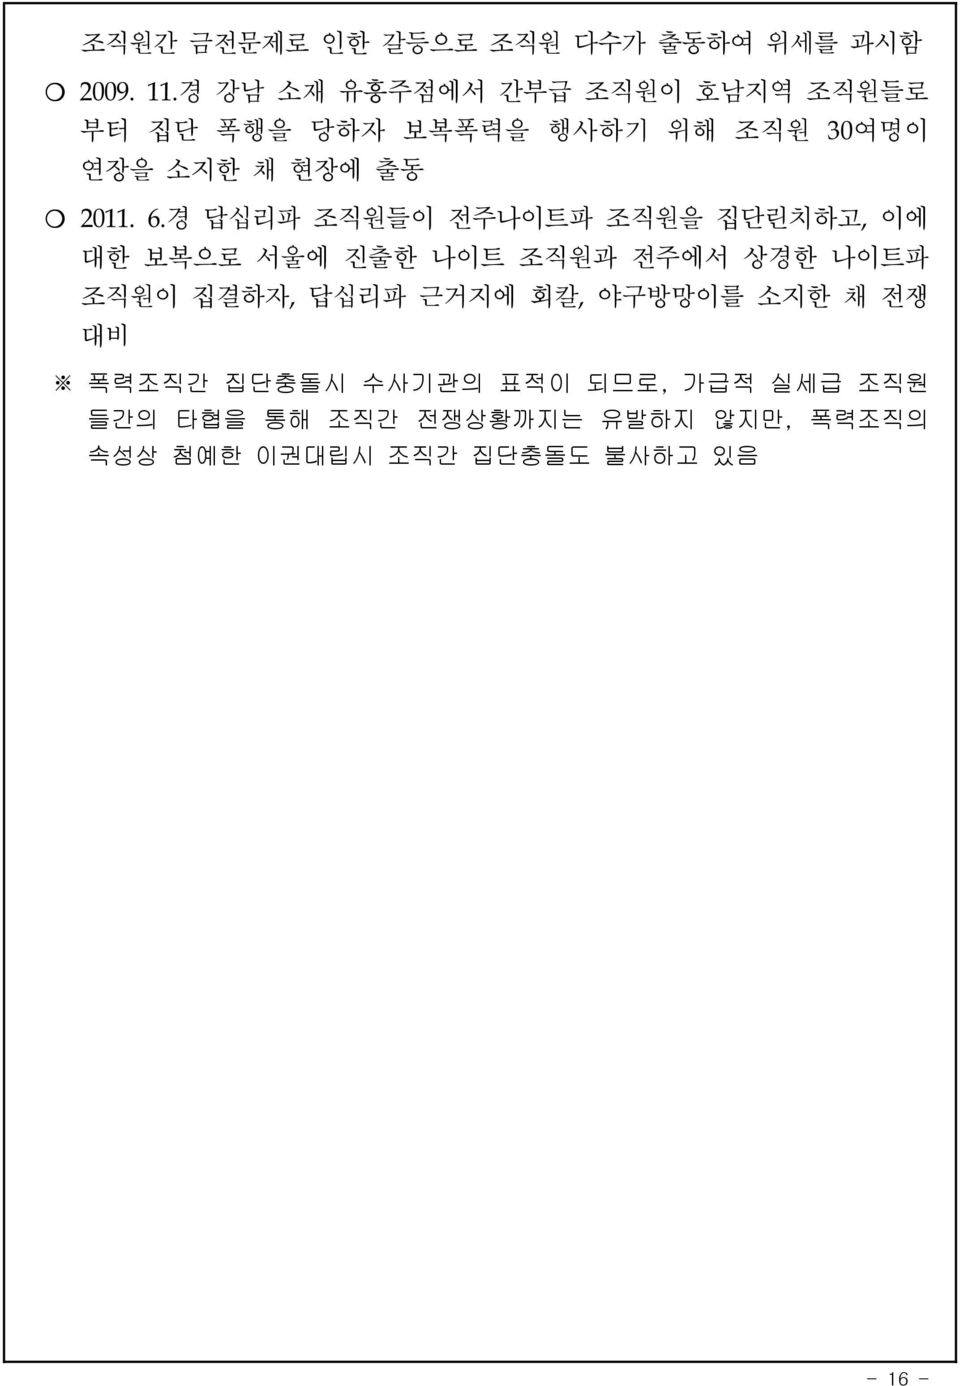 6.경 답십리파 조직원들이 전주나이트파 조직원을 집단린치하고,이에 대한 보복으로 서울에 진출한 나이트 조직원과 전주에서 상경한 나이트파 조직원이 집결하자,답십리파